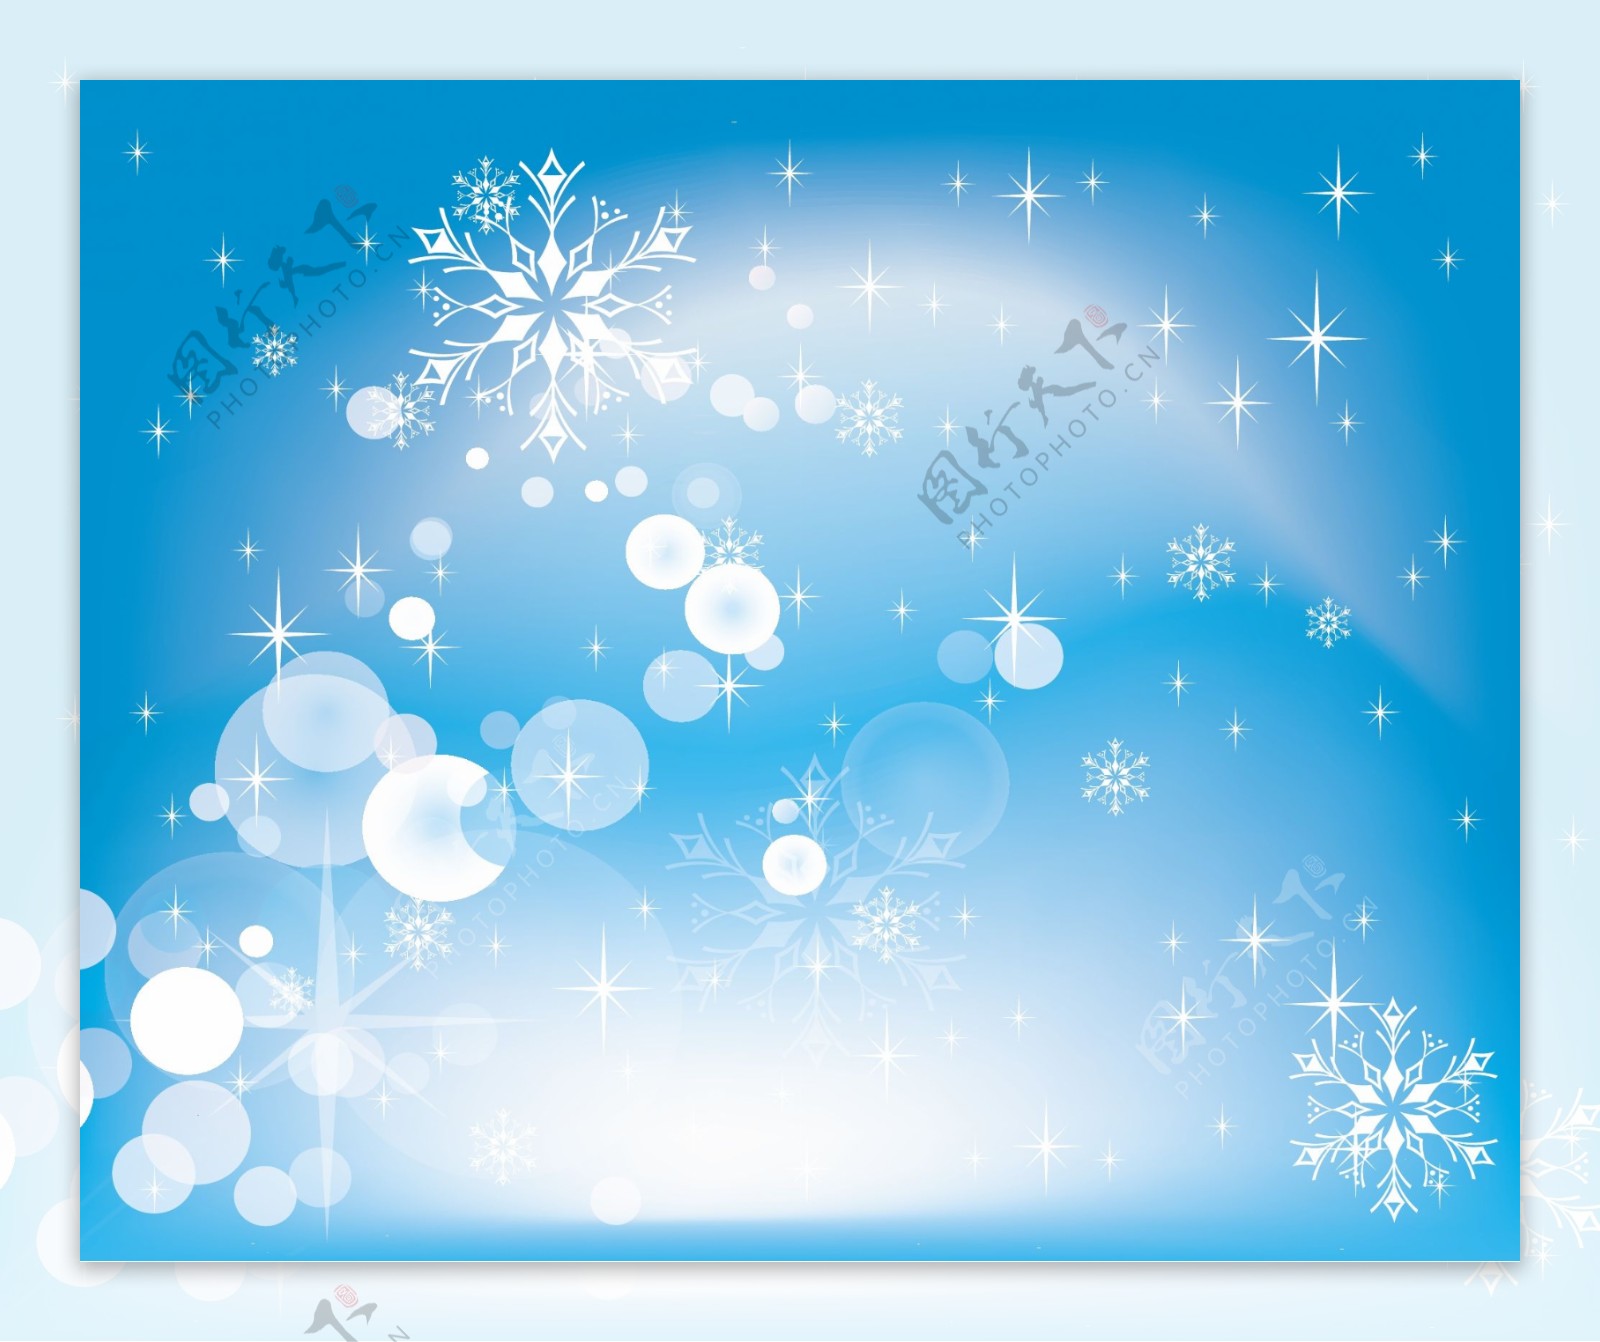 简单的闪闪发光的蓝色圣诞背景